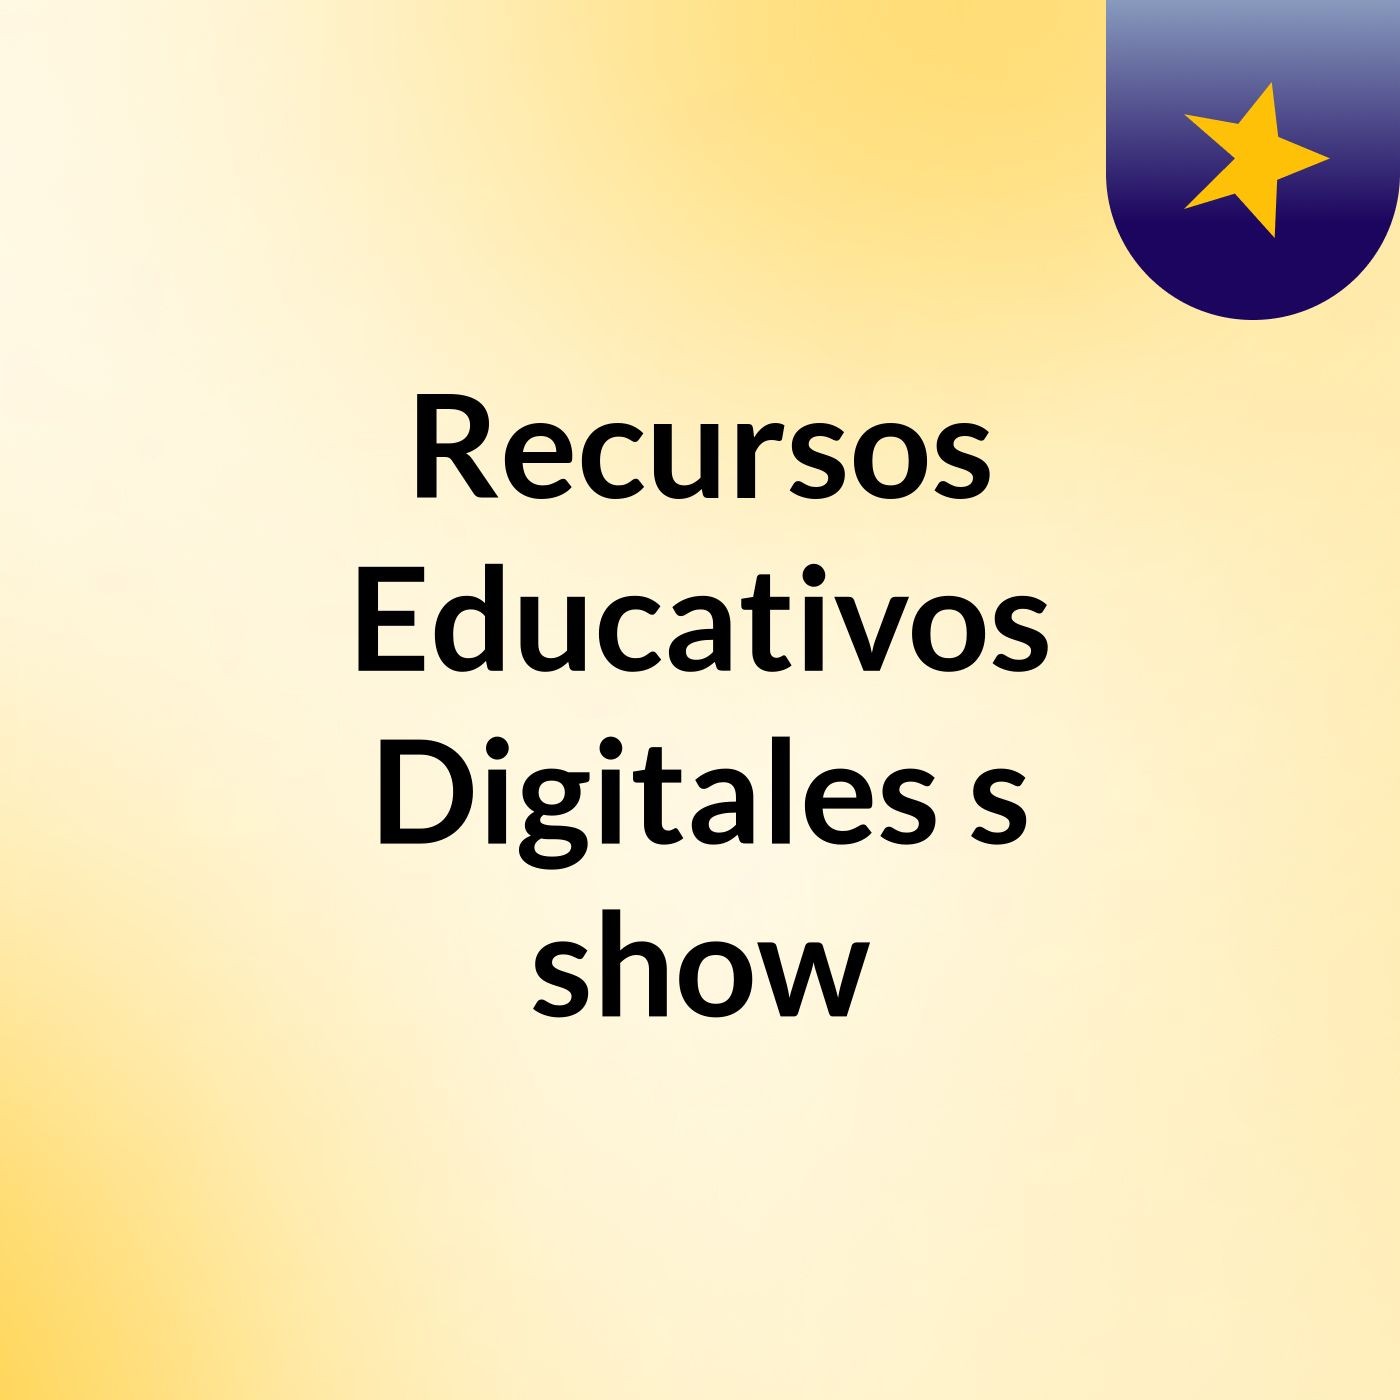 Recursos Educativos Digitales's show